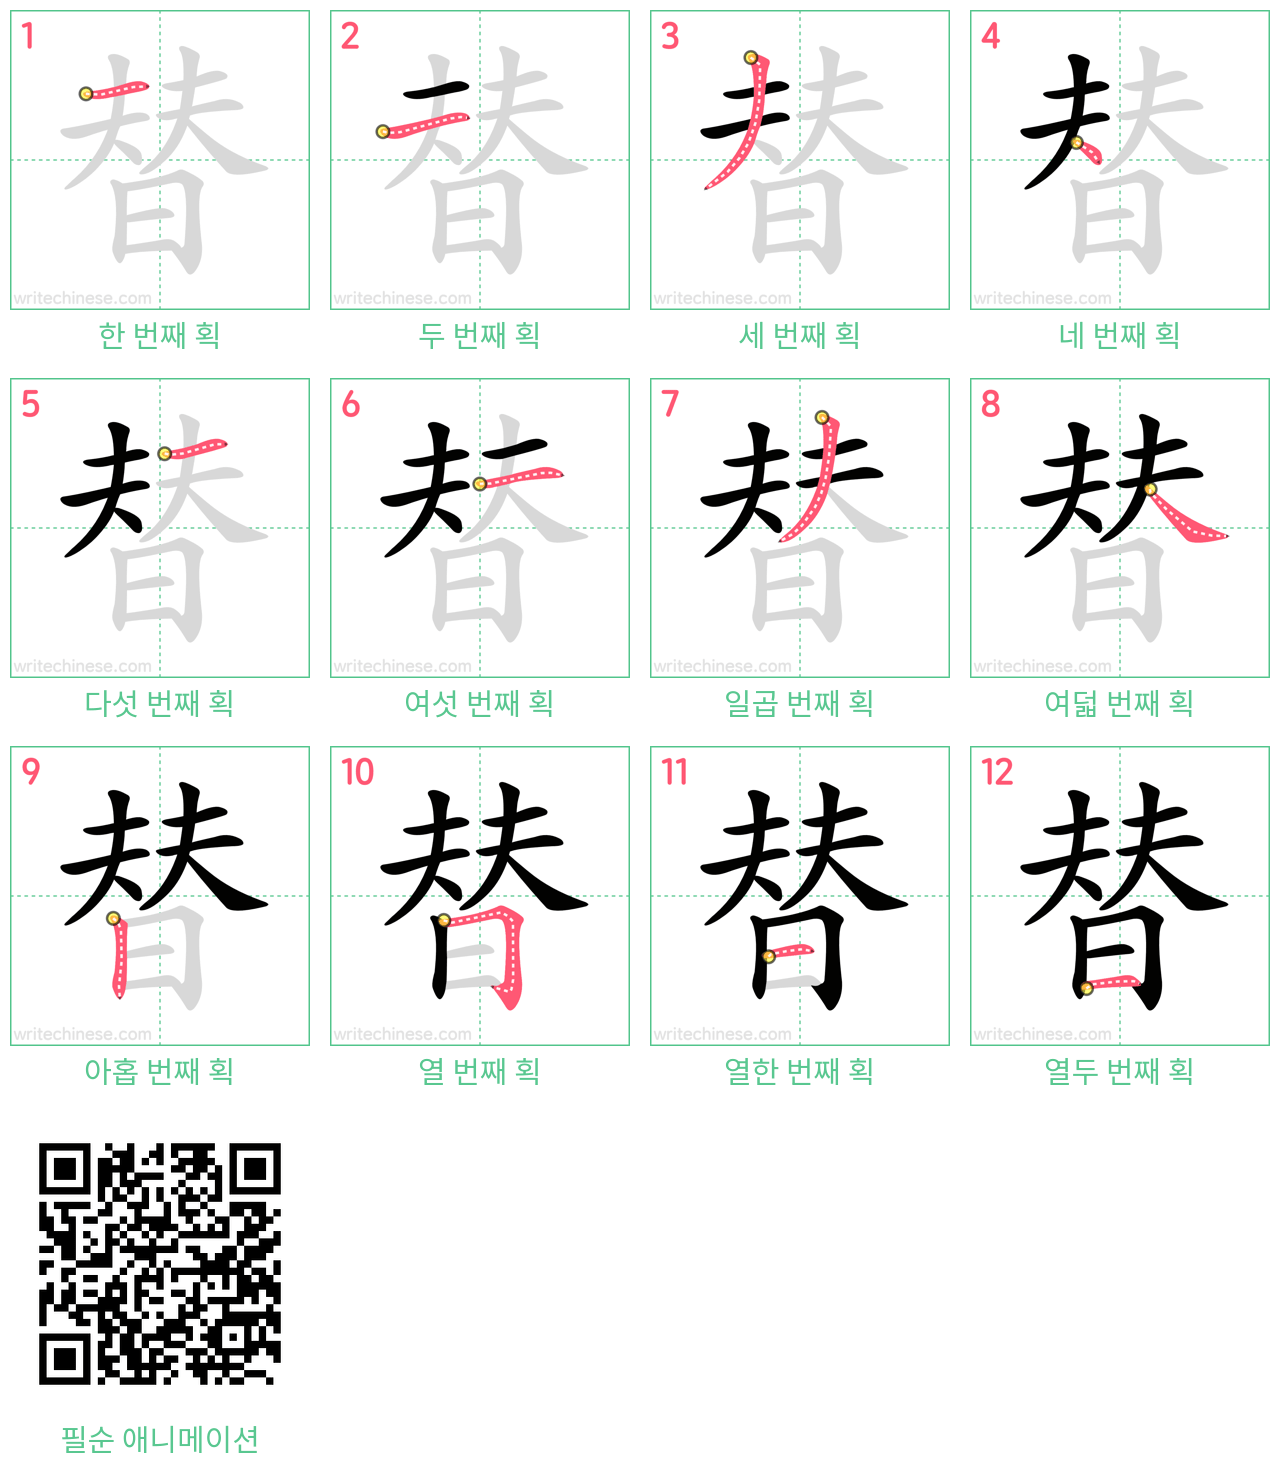 替 step-by-step stroke order diagrams